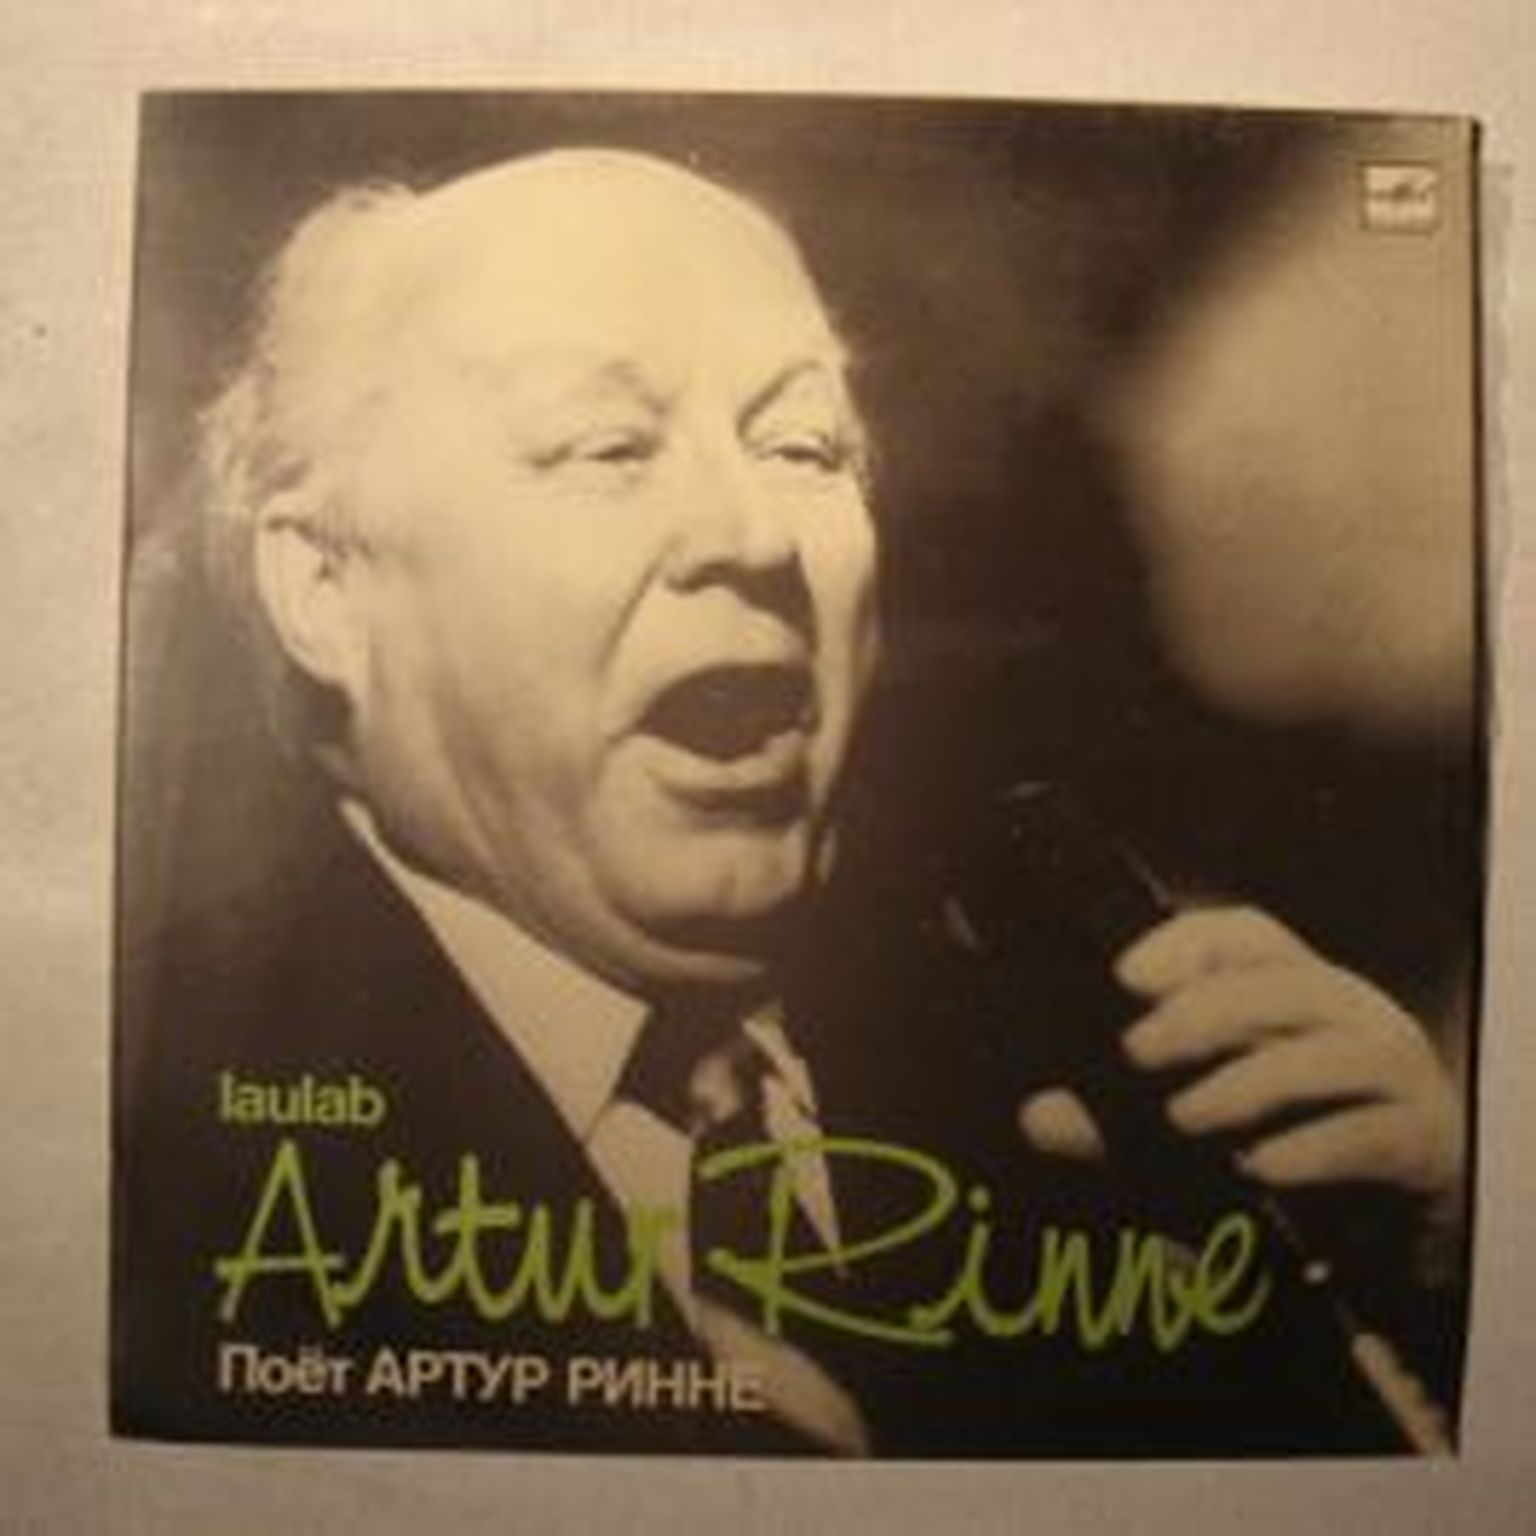 Artur Rinne lauludega vinüülplaat.